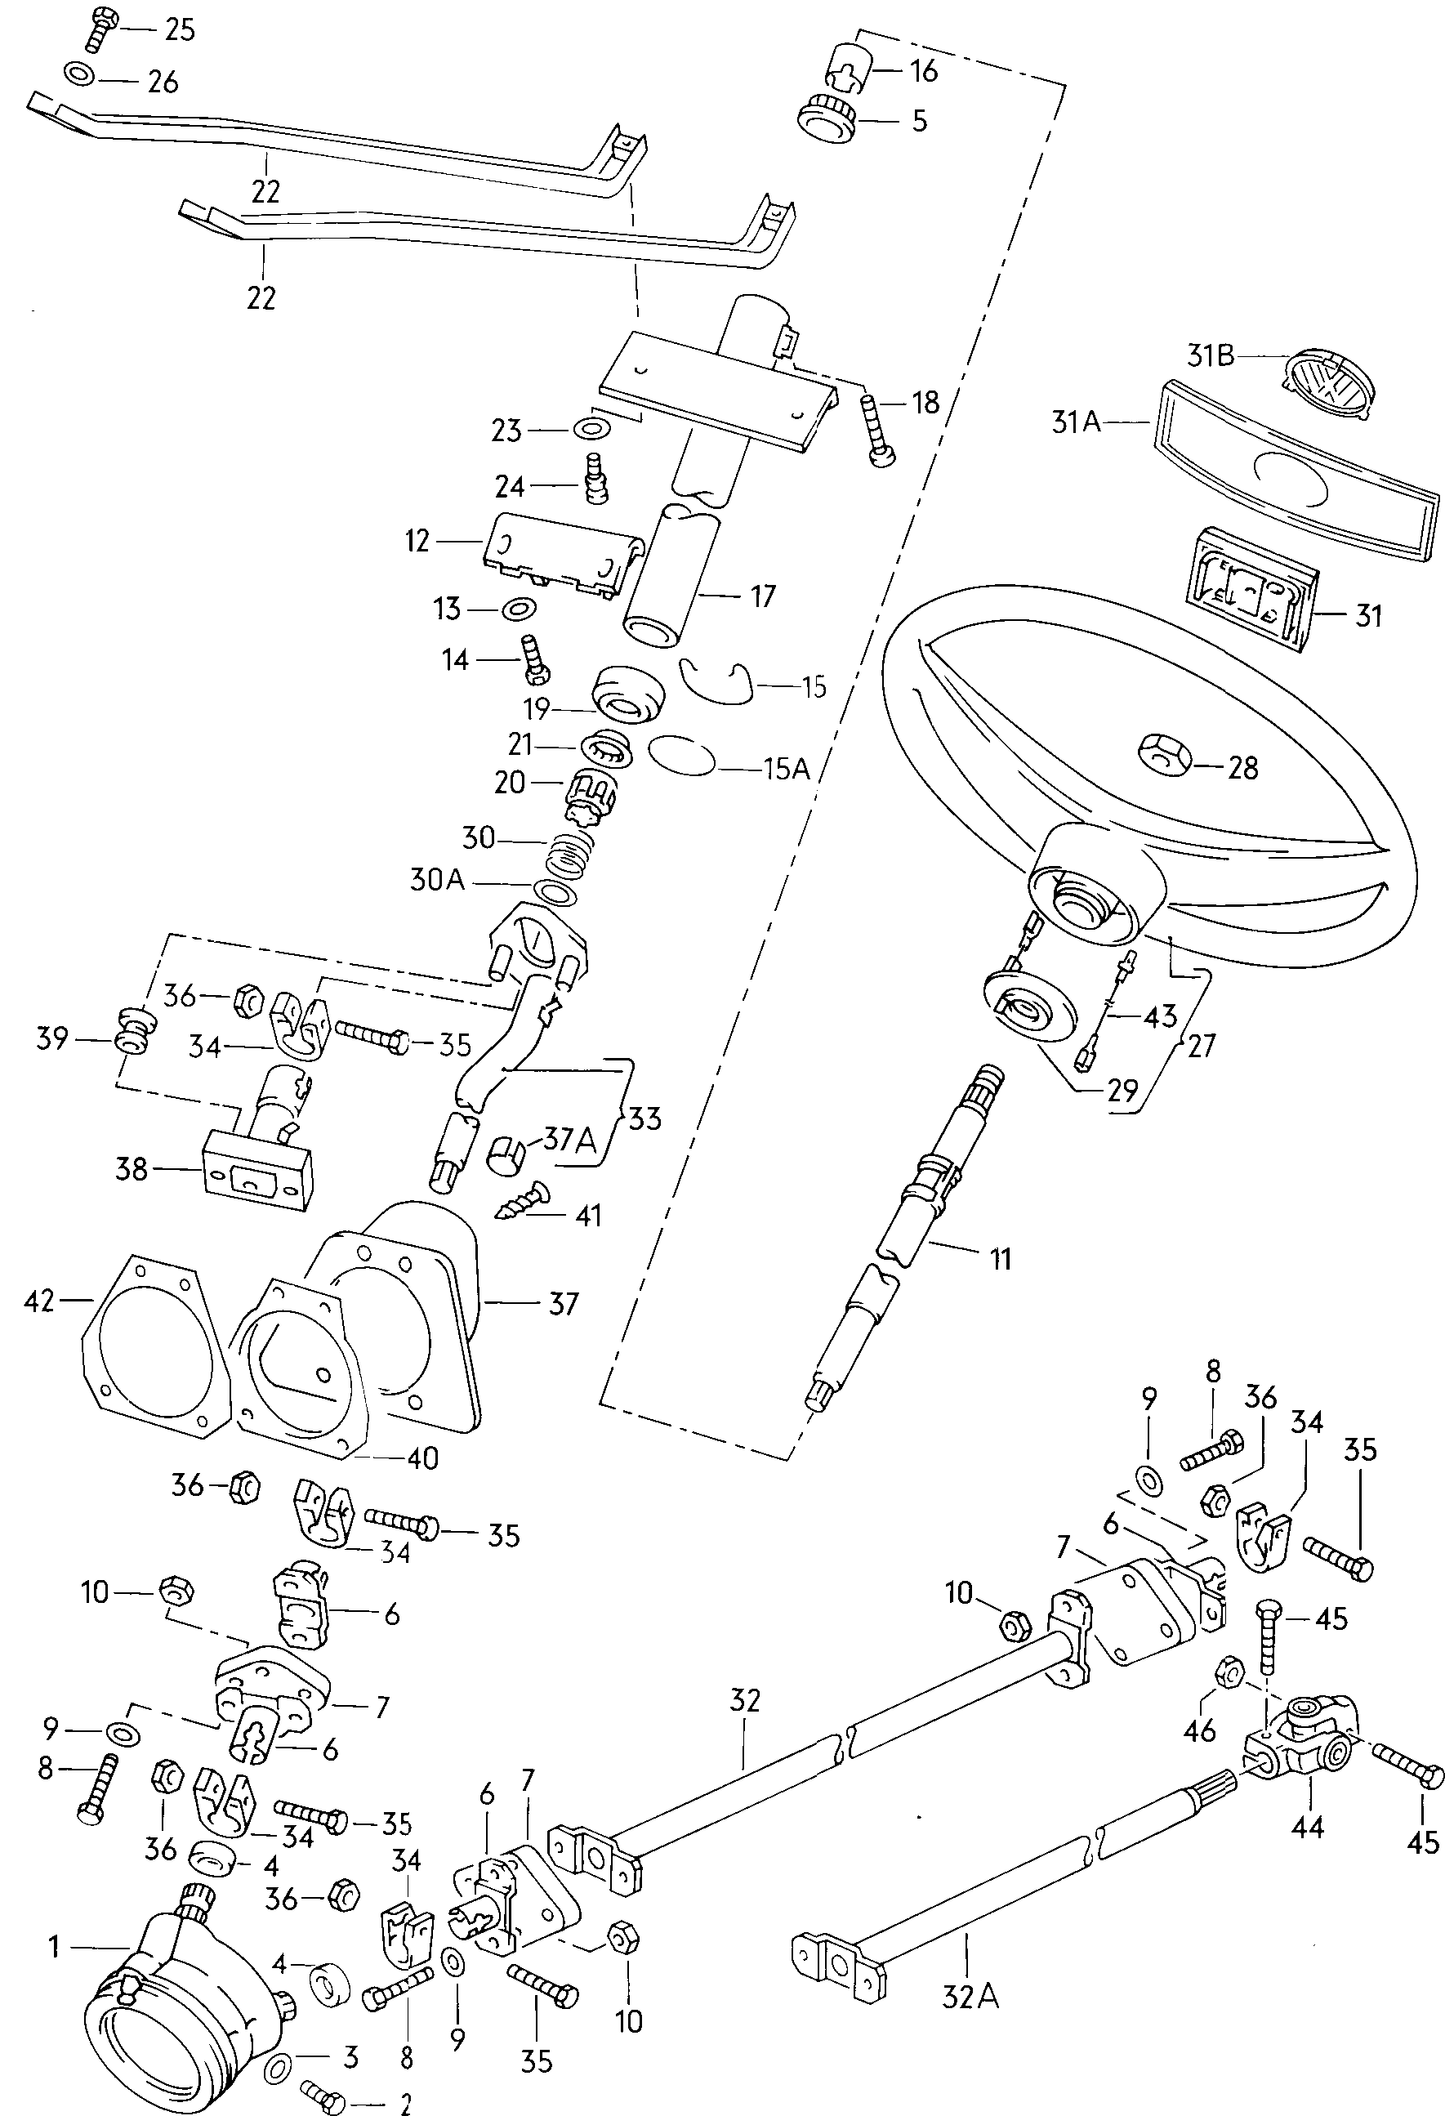 052-000 T25 steering wheel steering tube relay steering gear